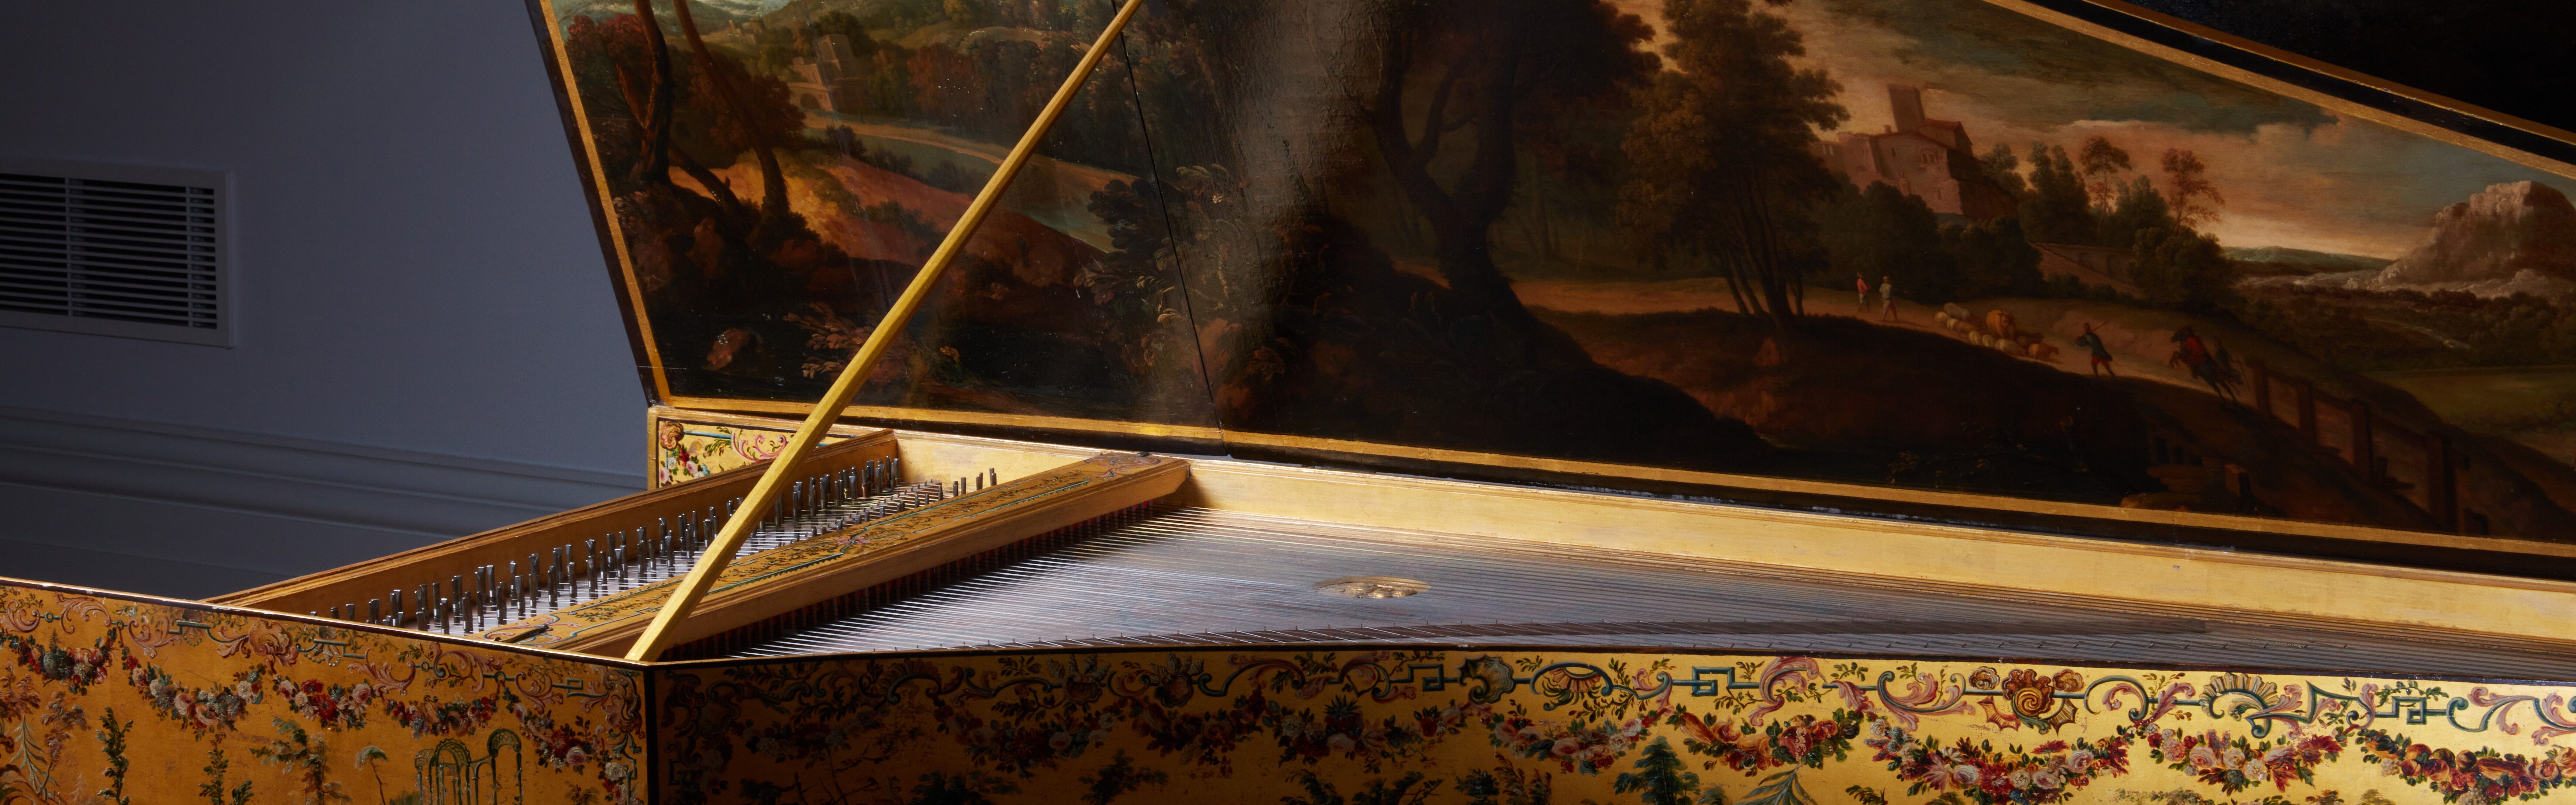 Concert sur le clavecin Ruckers par Michael Parisot